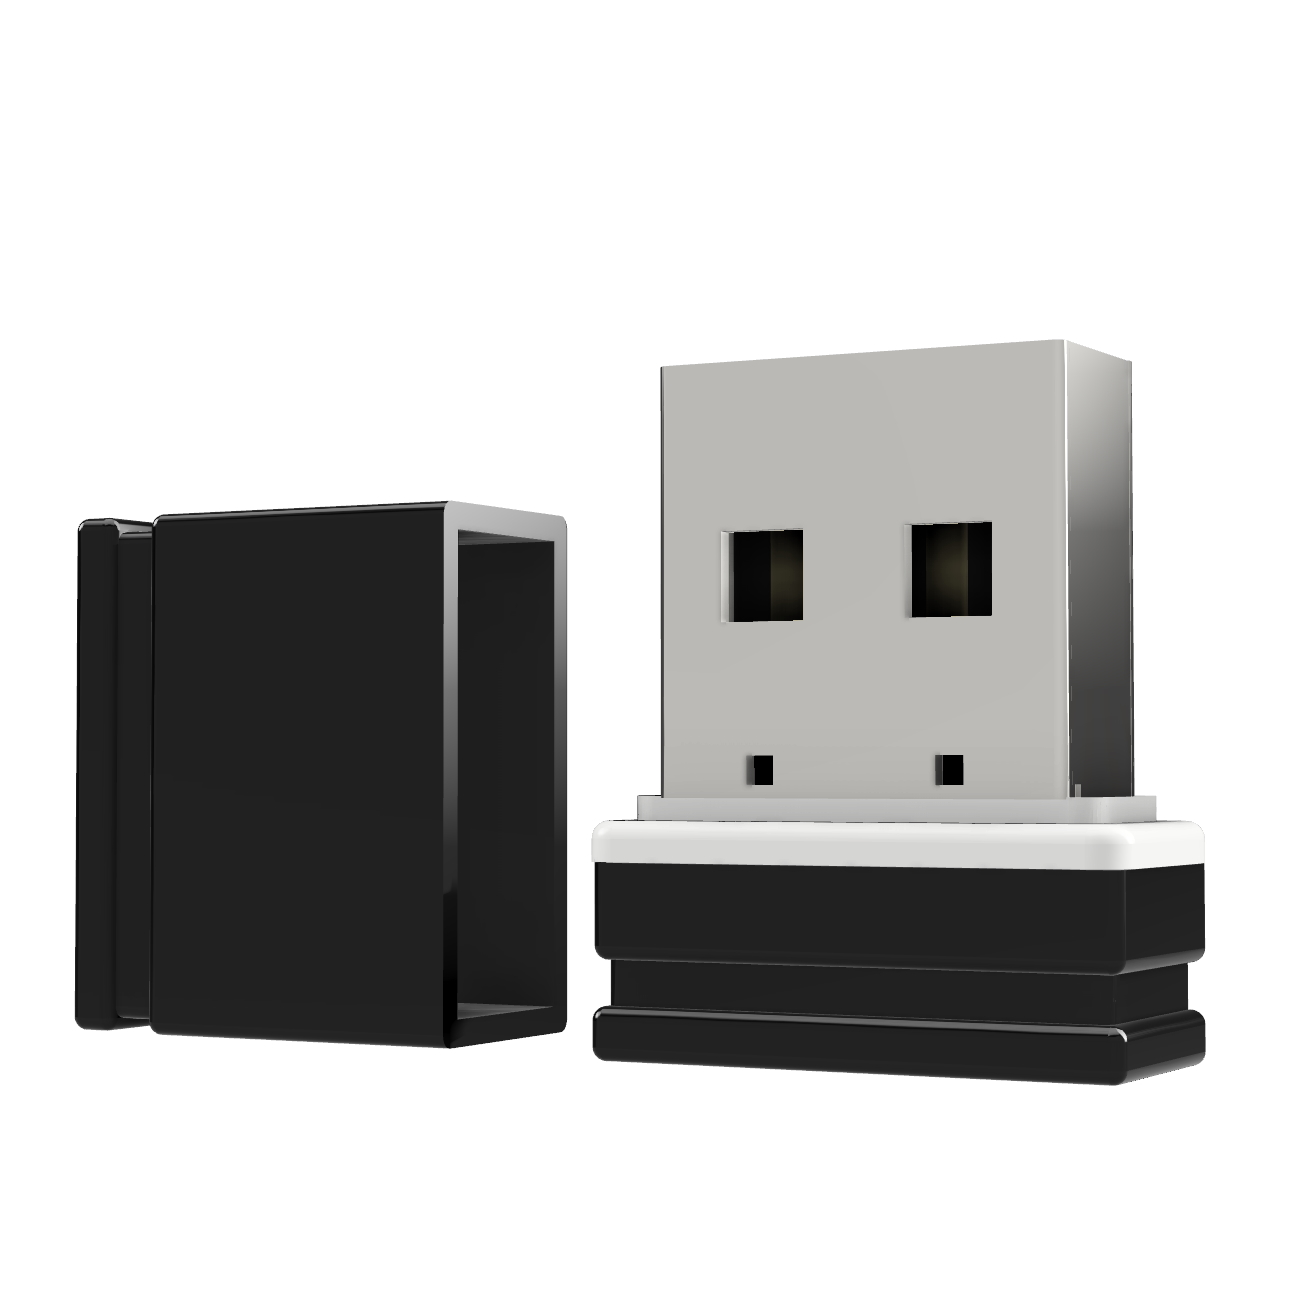 ®ULTRA GERMANY 2 Mini GB) P1 USB-Stick USB (Schwarz/Weiss,